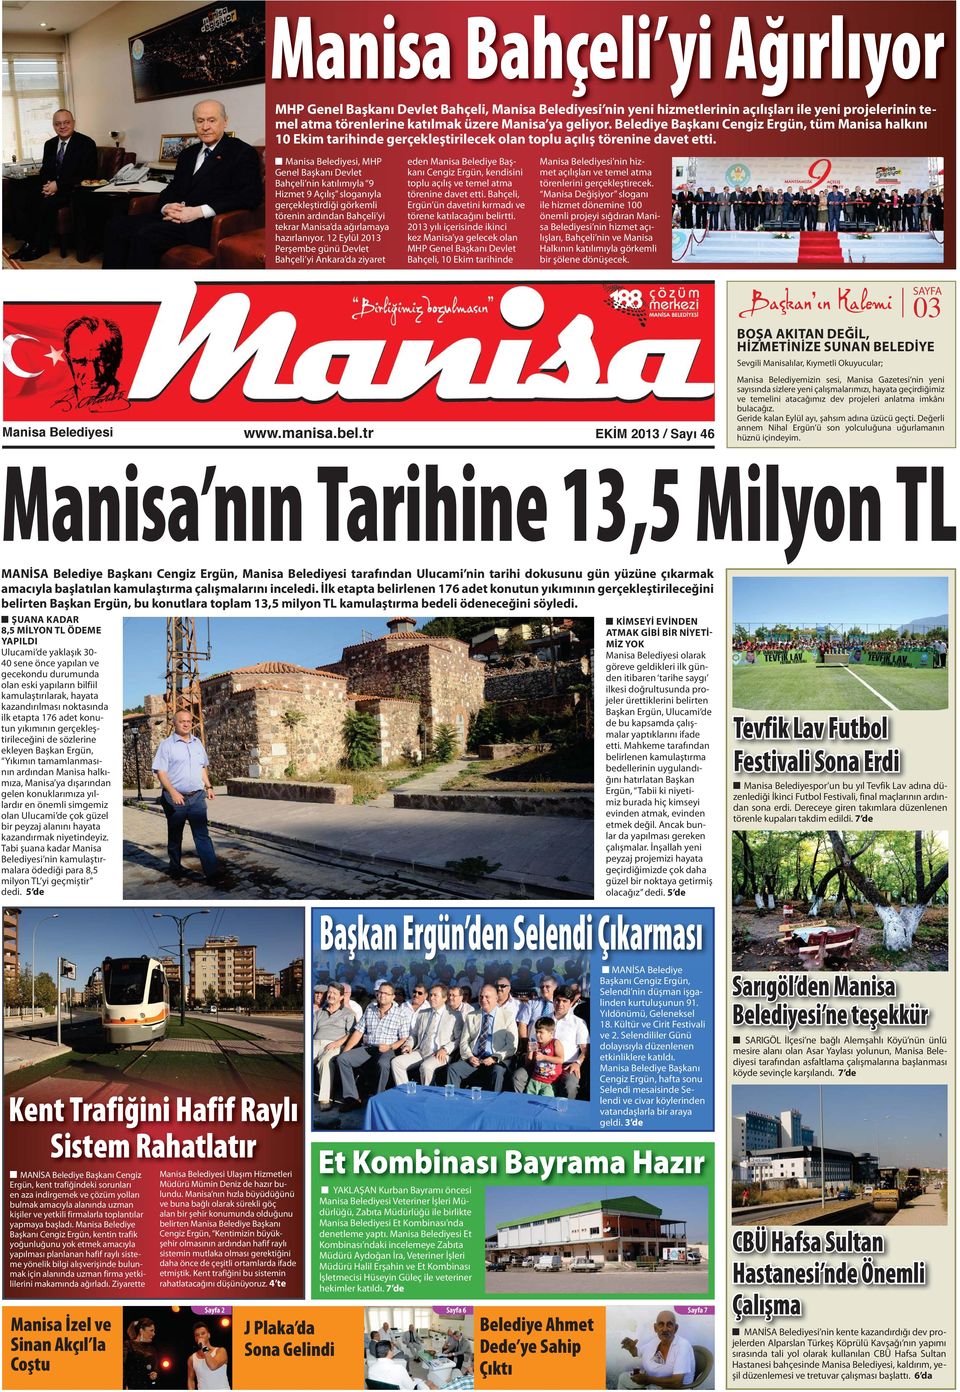 Manisa Belediyesi, MHP Genel Başkanı Devlet Bahçeli nin katılımıyla 9 Hizmet 9 Açılış sloganıyla gerçekleştirdiği görkemli törenin ardından Bahçeli yi tekrar Manisa da ağırlamaya hazırlanıyor.